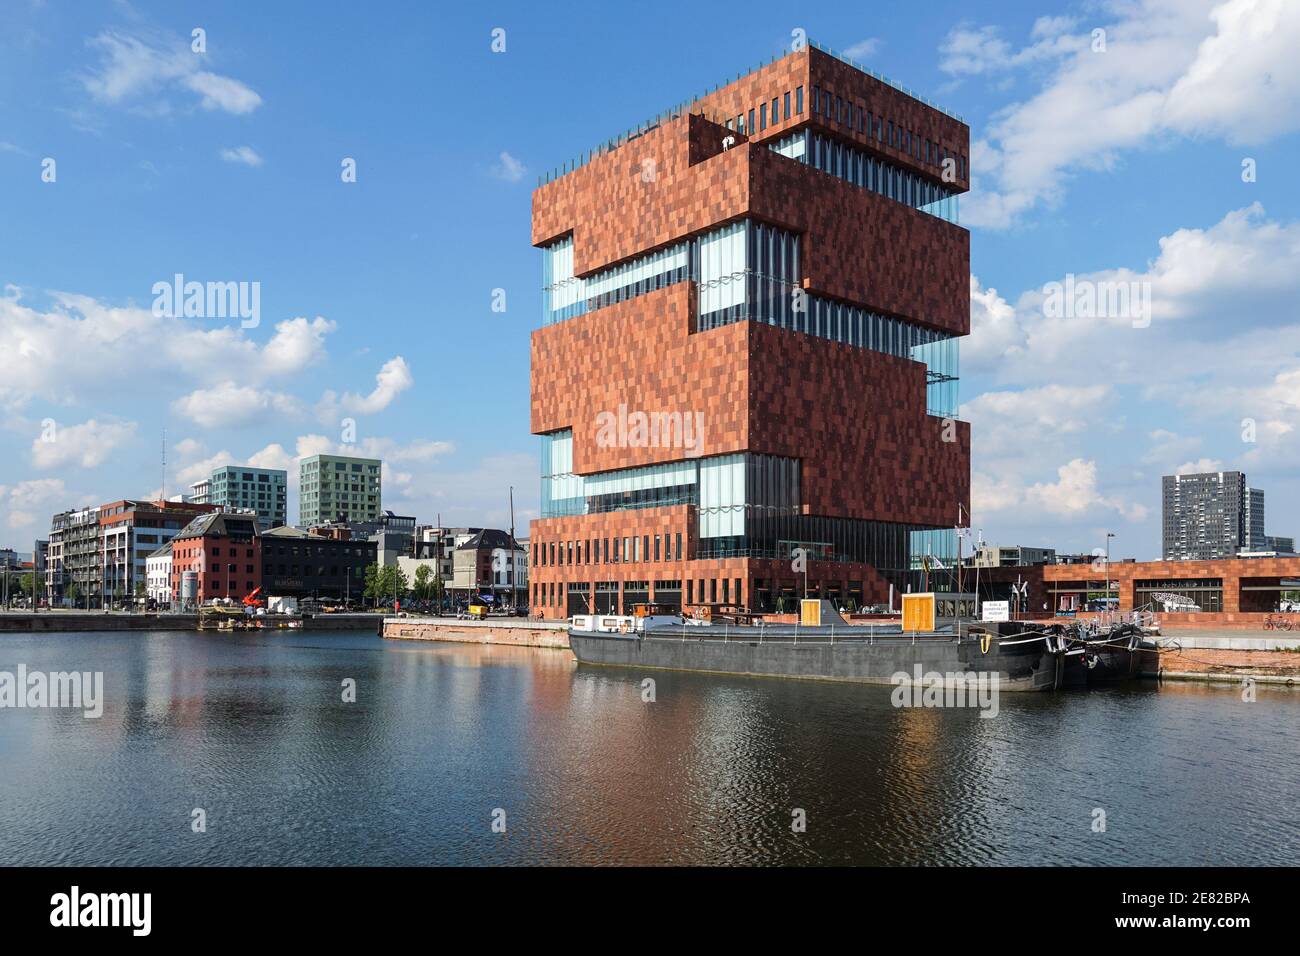 Museum aan de Stroom, MAS, Museum im Stadtteil Eilandje von Antwerpen, Belgien Stockfoto